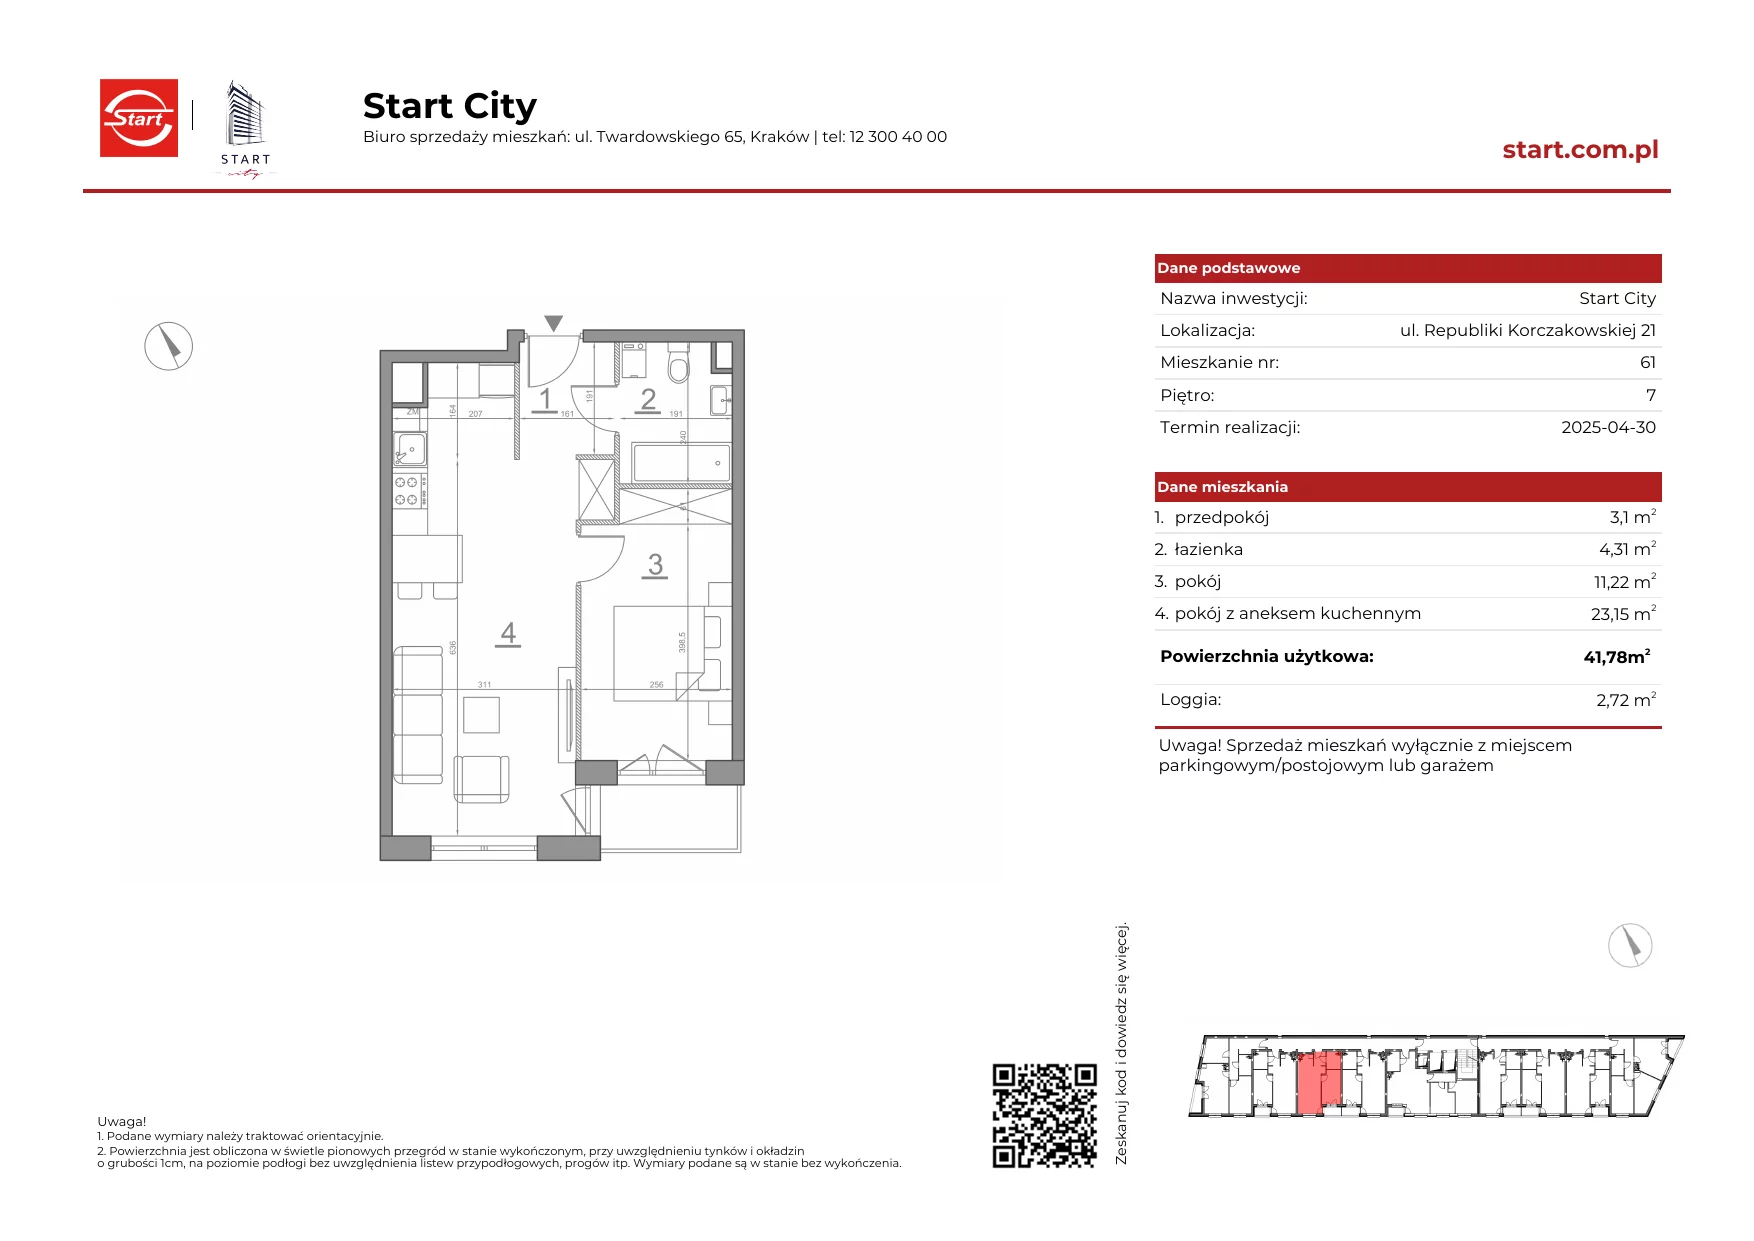 Mieszkanie 41,78 m², piętro 7, oferta nr 21/61, Start City, Kraków, Bieżanów-Prokocim, ul. Republiki Korczakowskiej 21